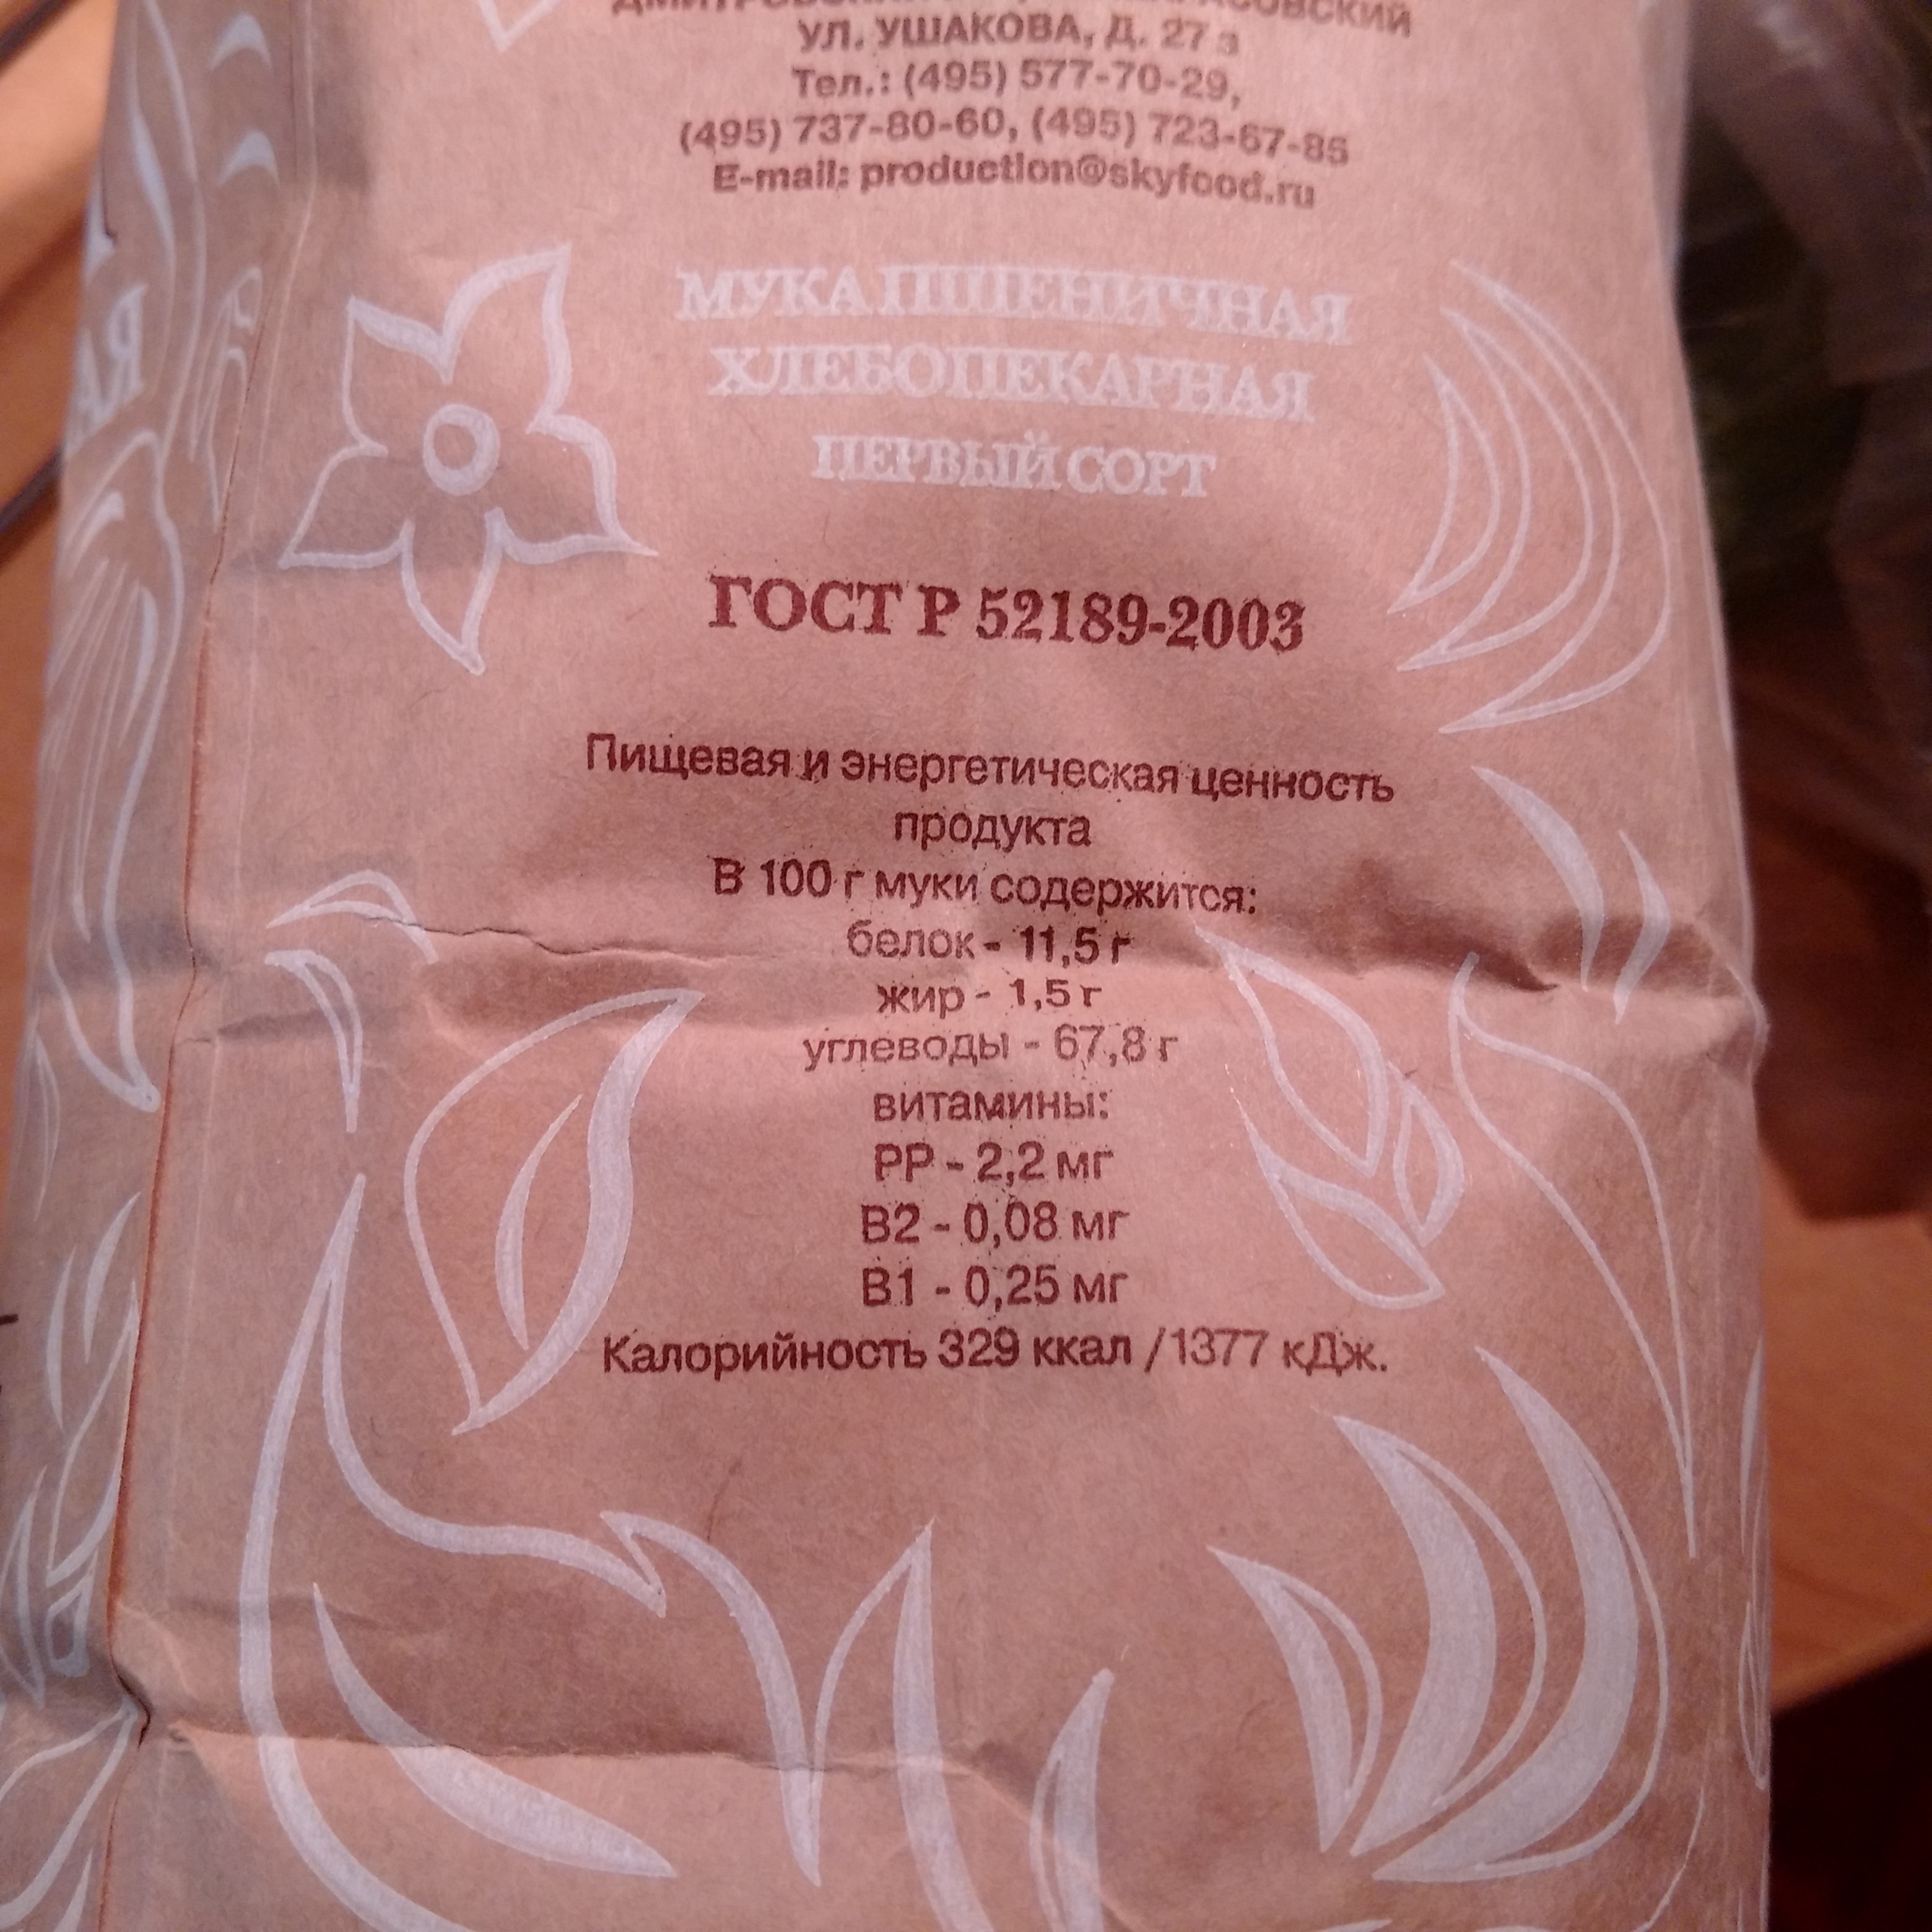 Mąka pszenna w Rosji, rodzaje, odmiany, właściwości